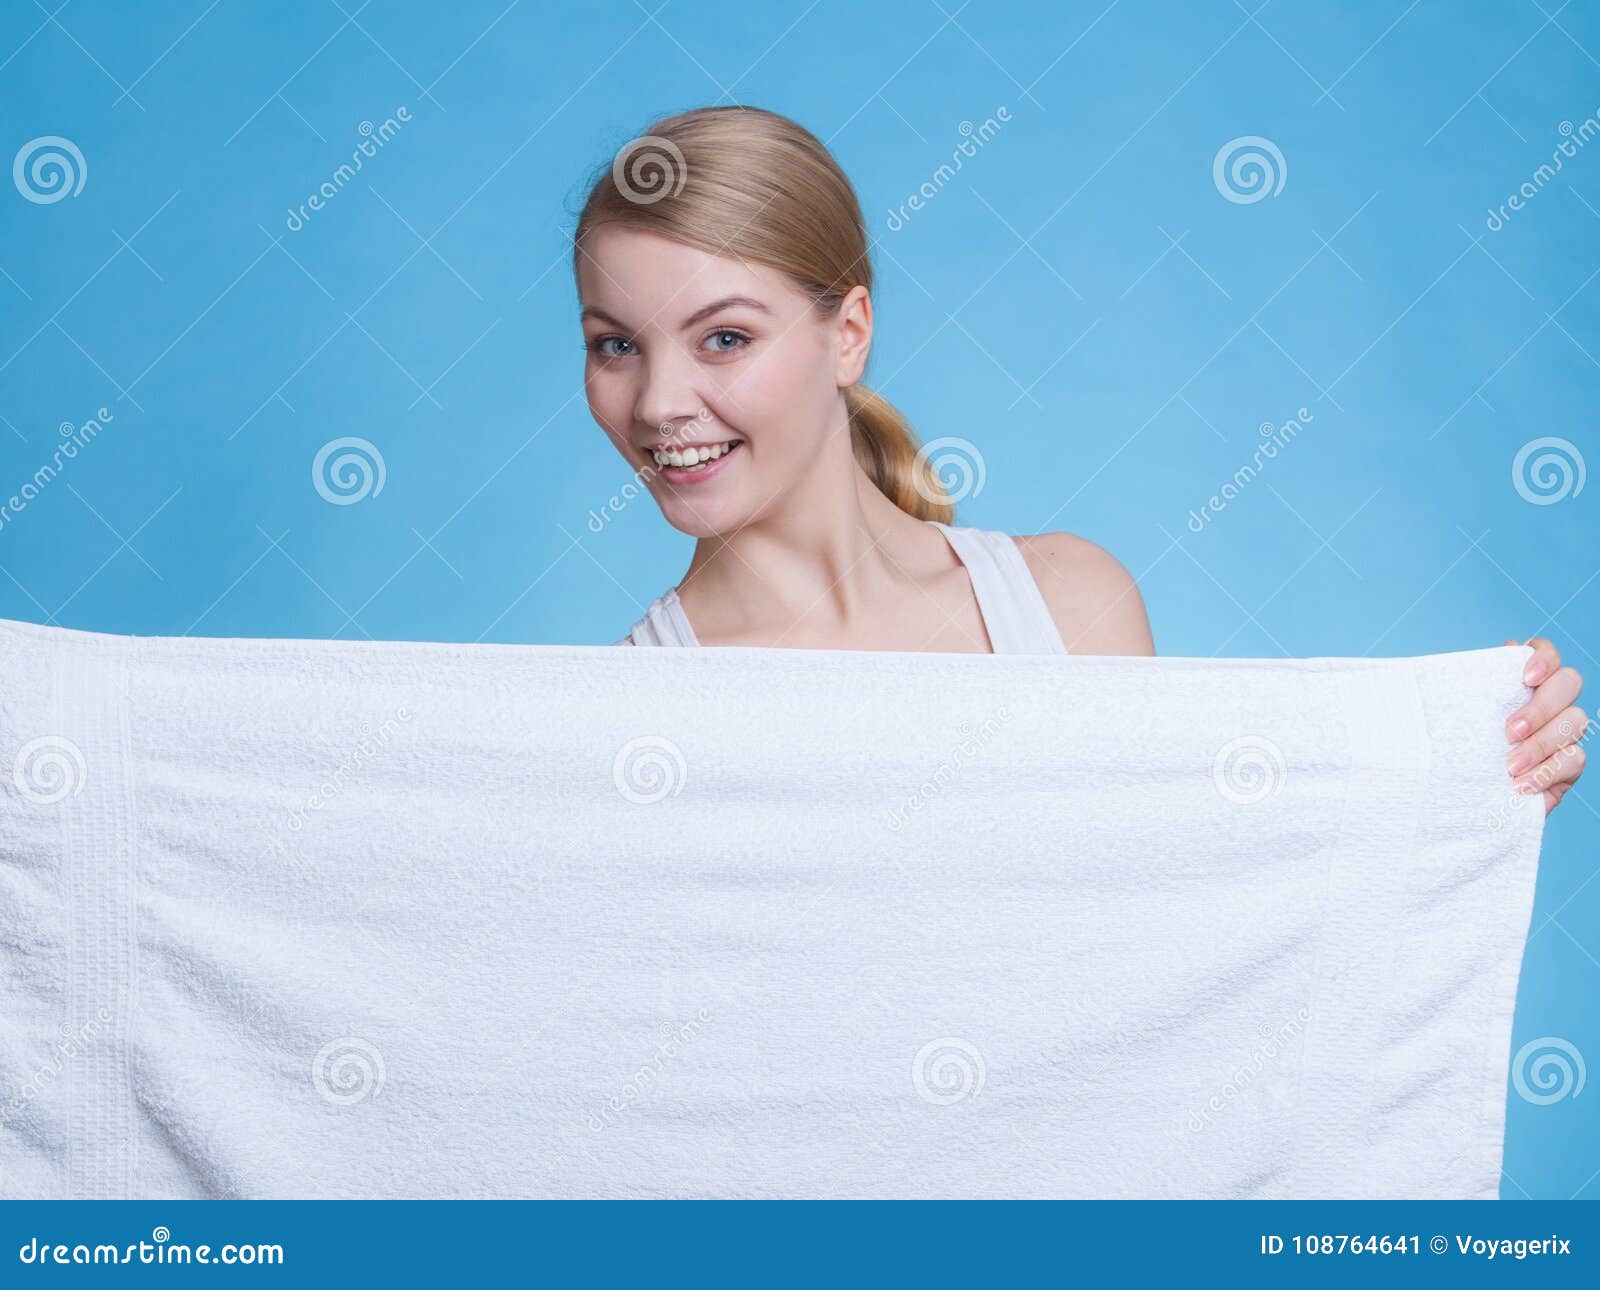 Спадающее полотенце. Человек в полотенце. Девушка держит полотенце. Девушка в белом полотенце. Девушка с полотенцем в руках.